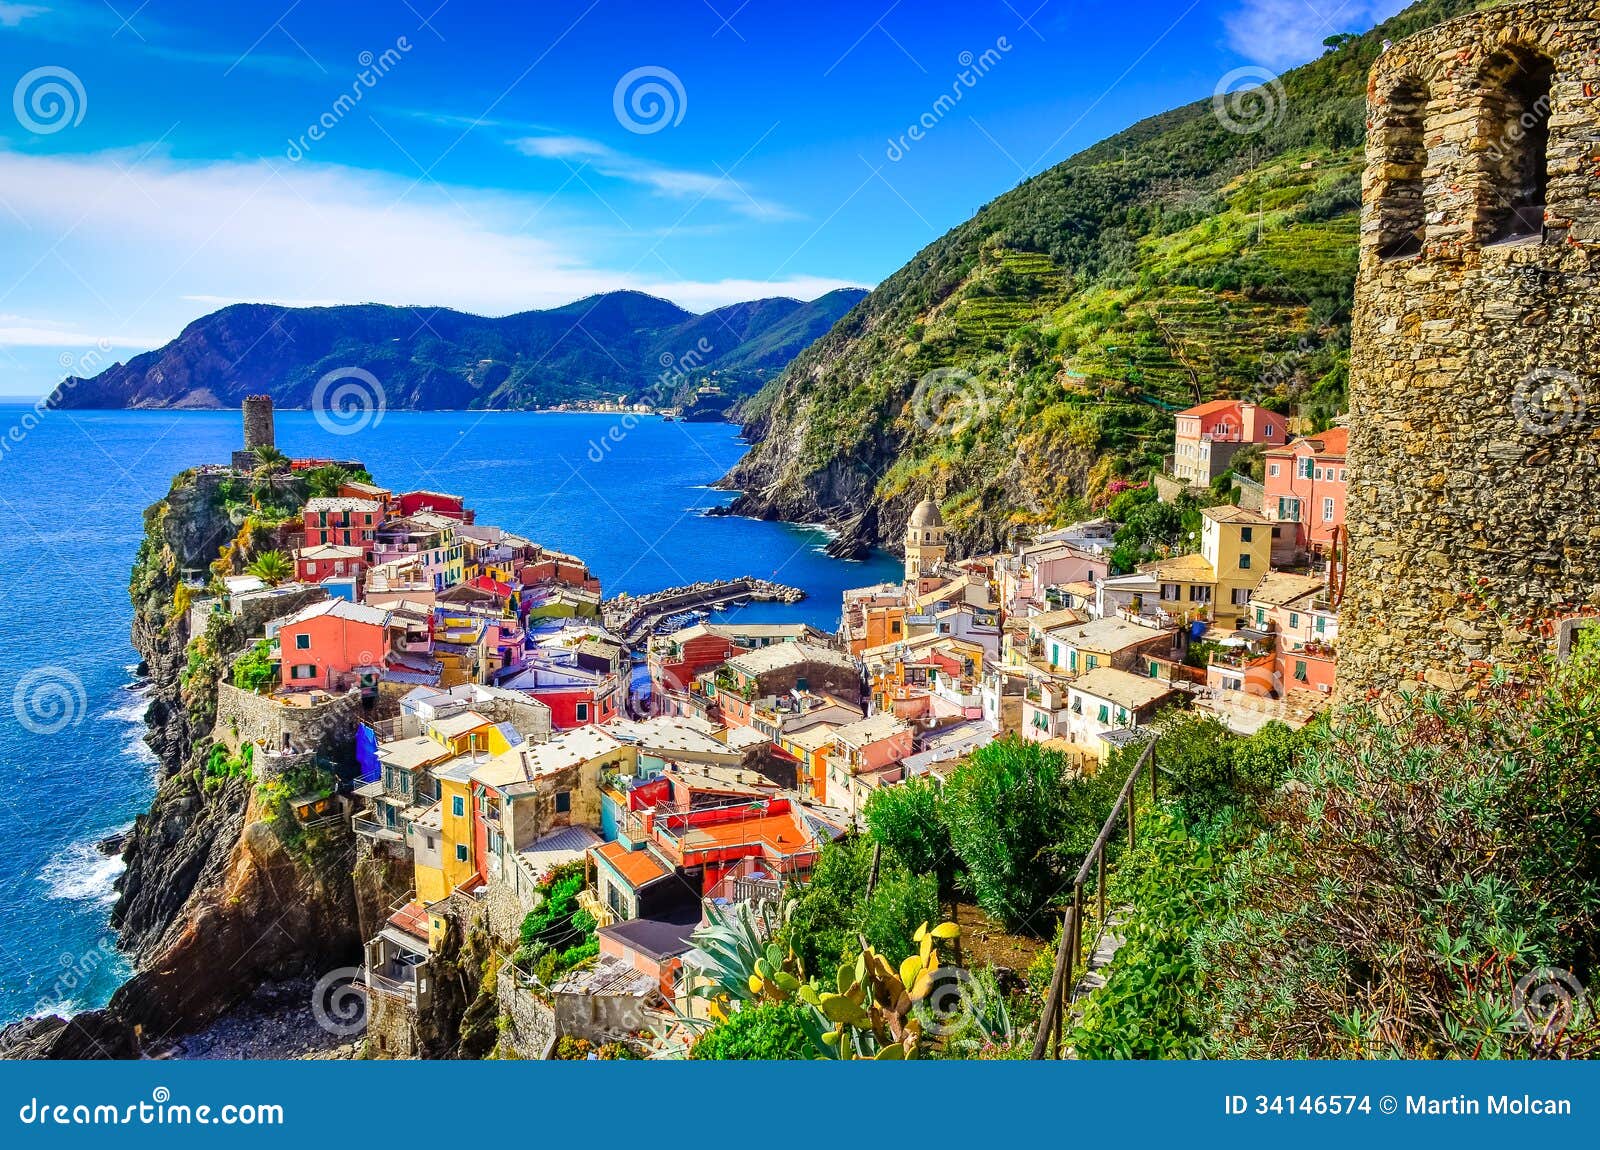 scenic view of colorful village vernazza in cinque terre